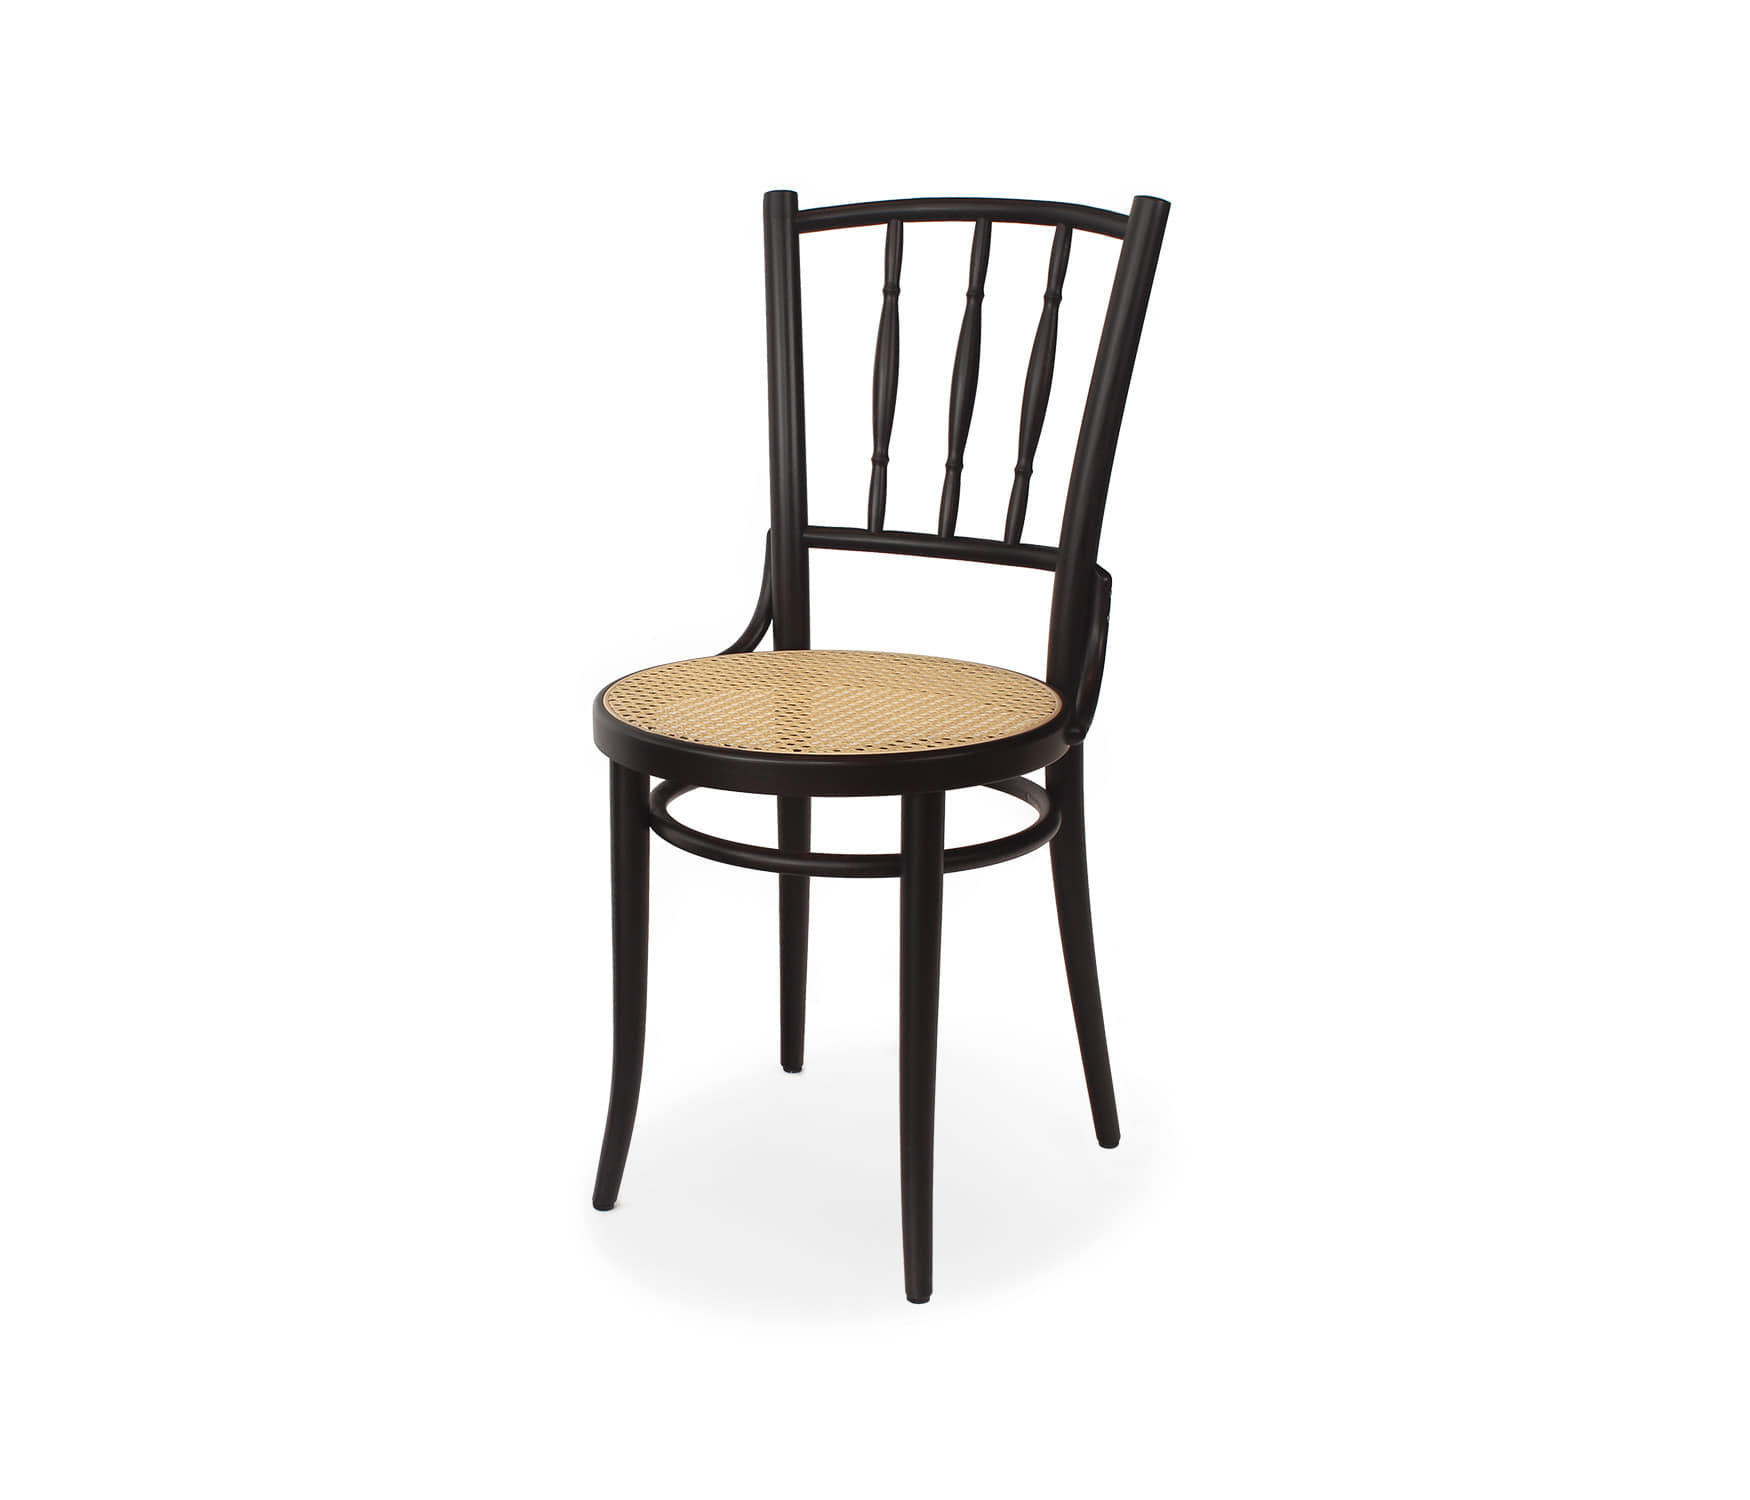 Chair Dejavu 378 - Dark Wenge/Cane